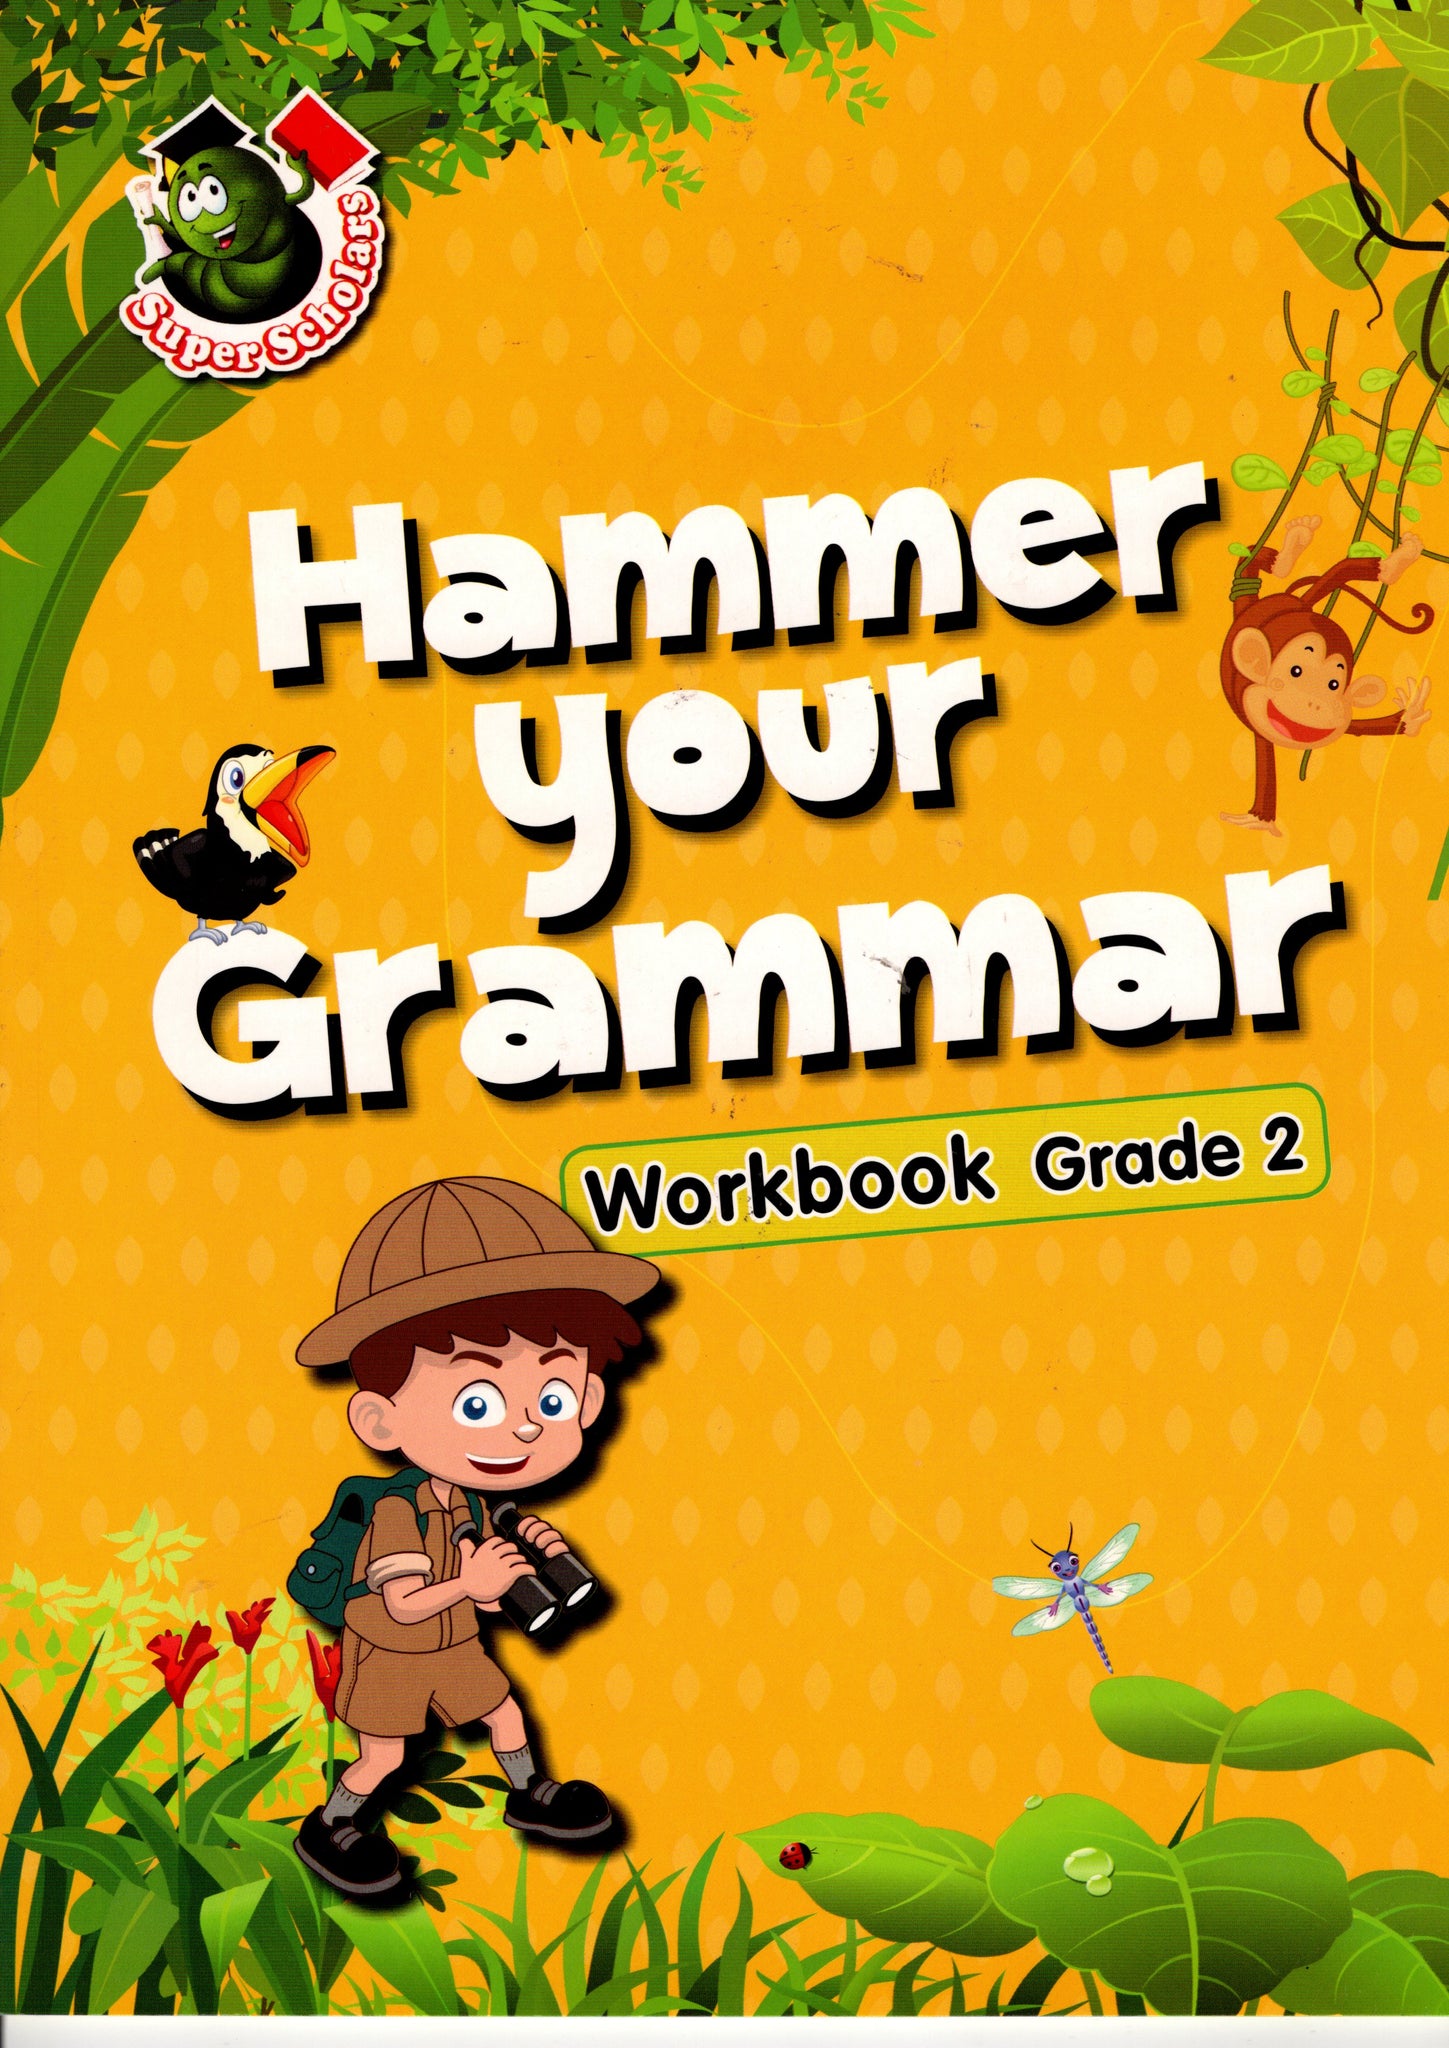 Hammer your Grammar Workbook